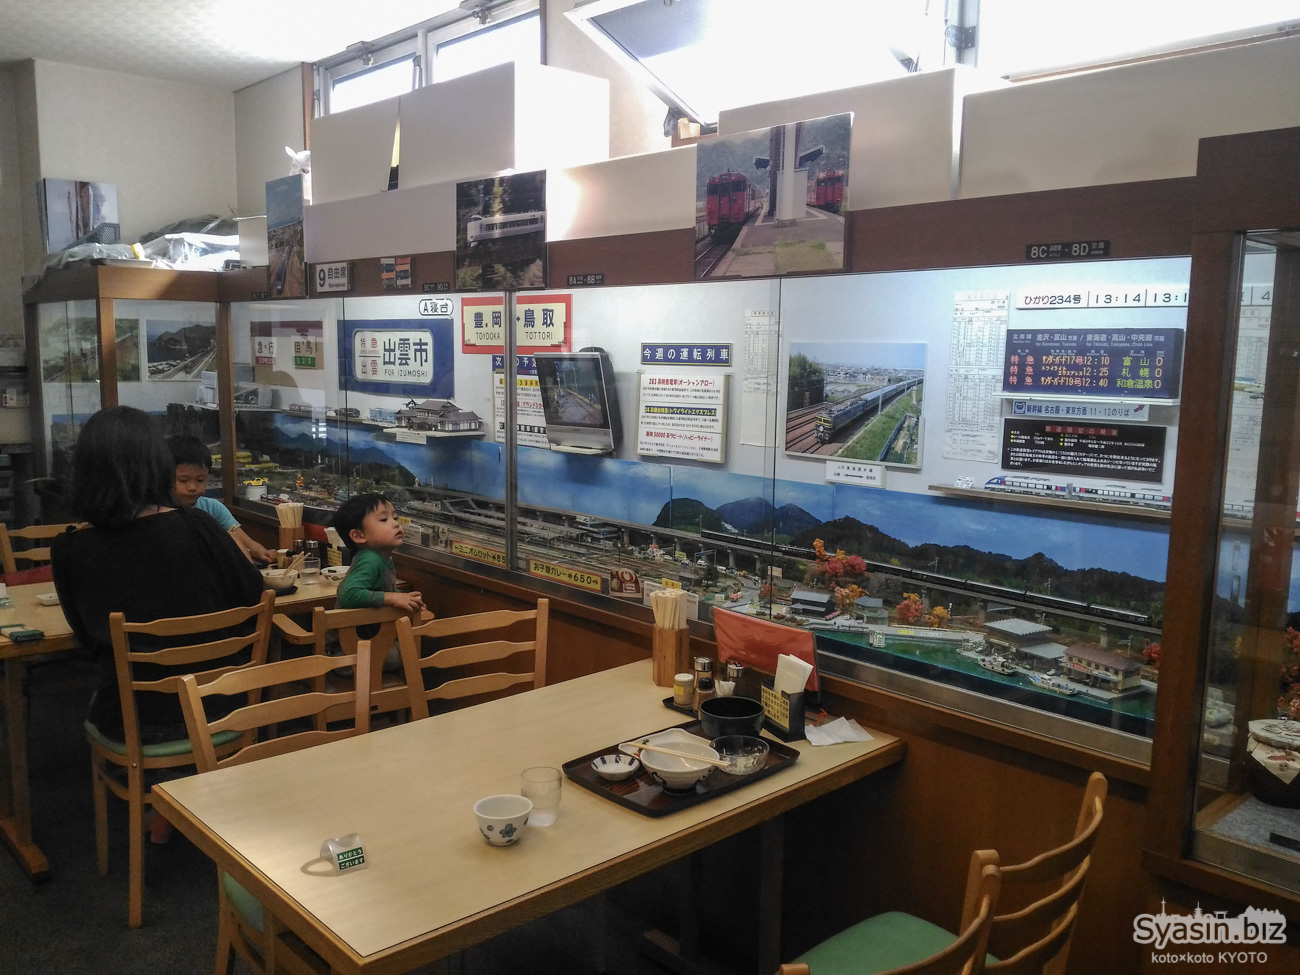 相生食堂 – 店内のジオラマでNゲージの鉄道模型が走る